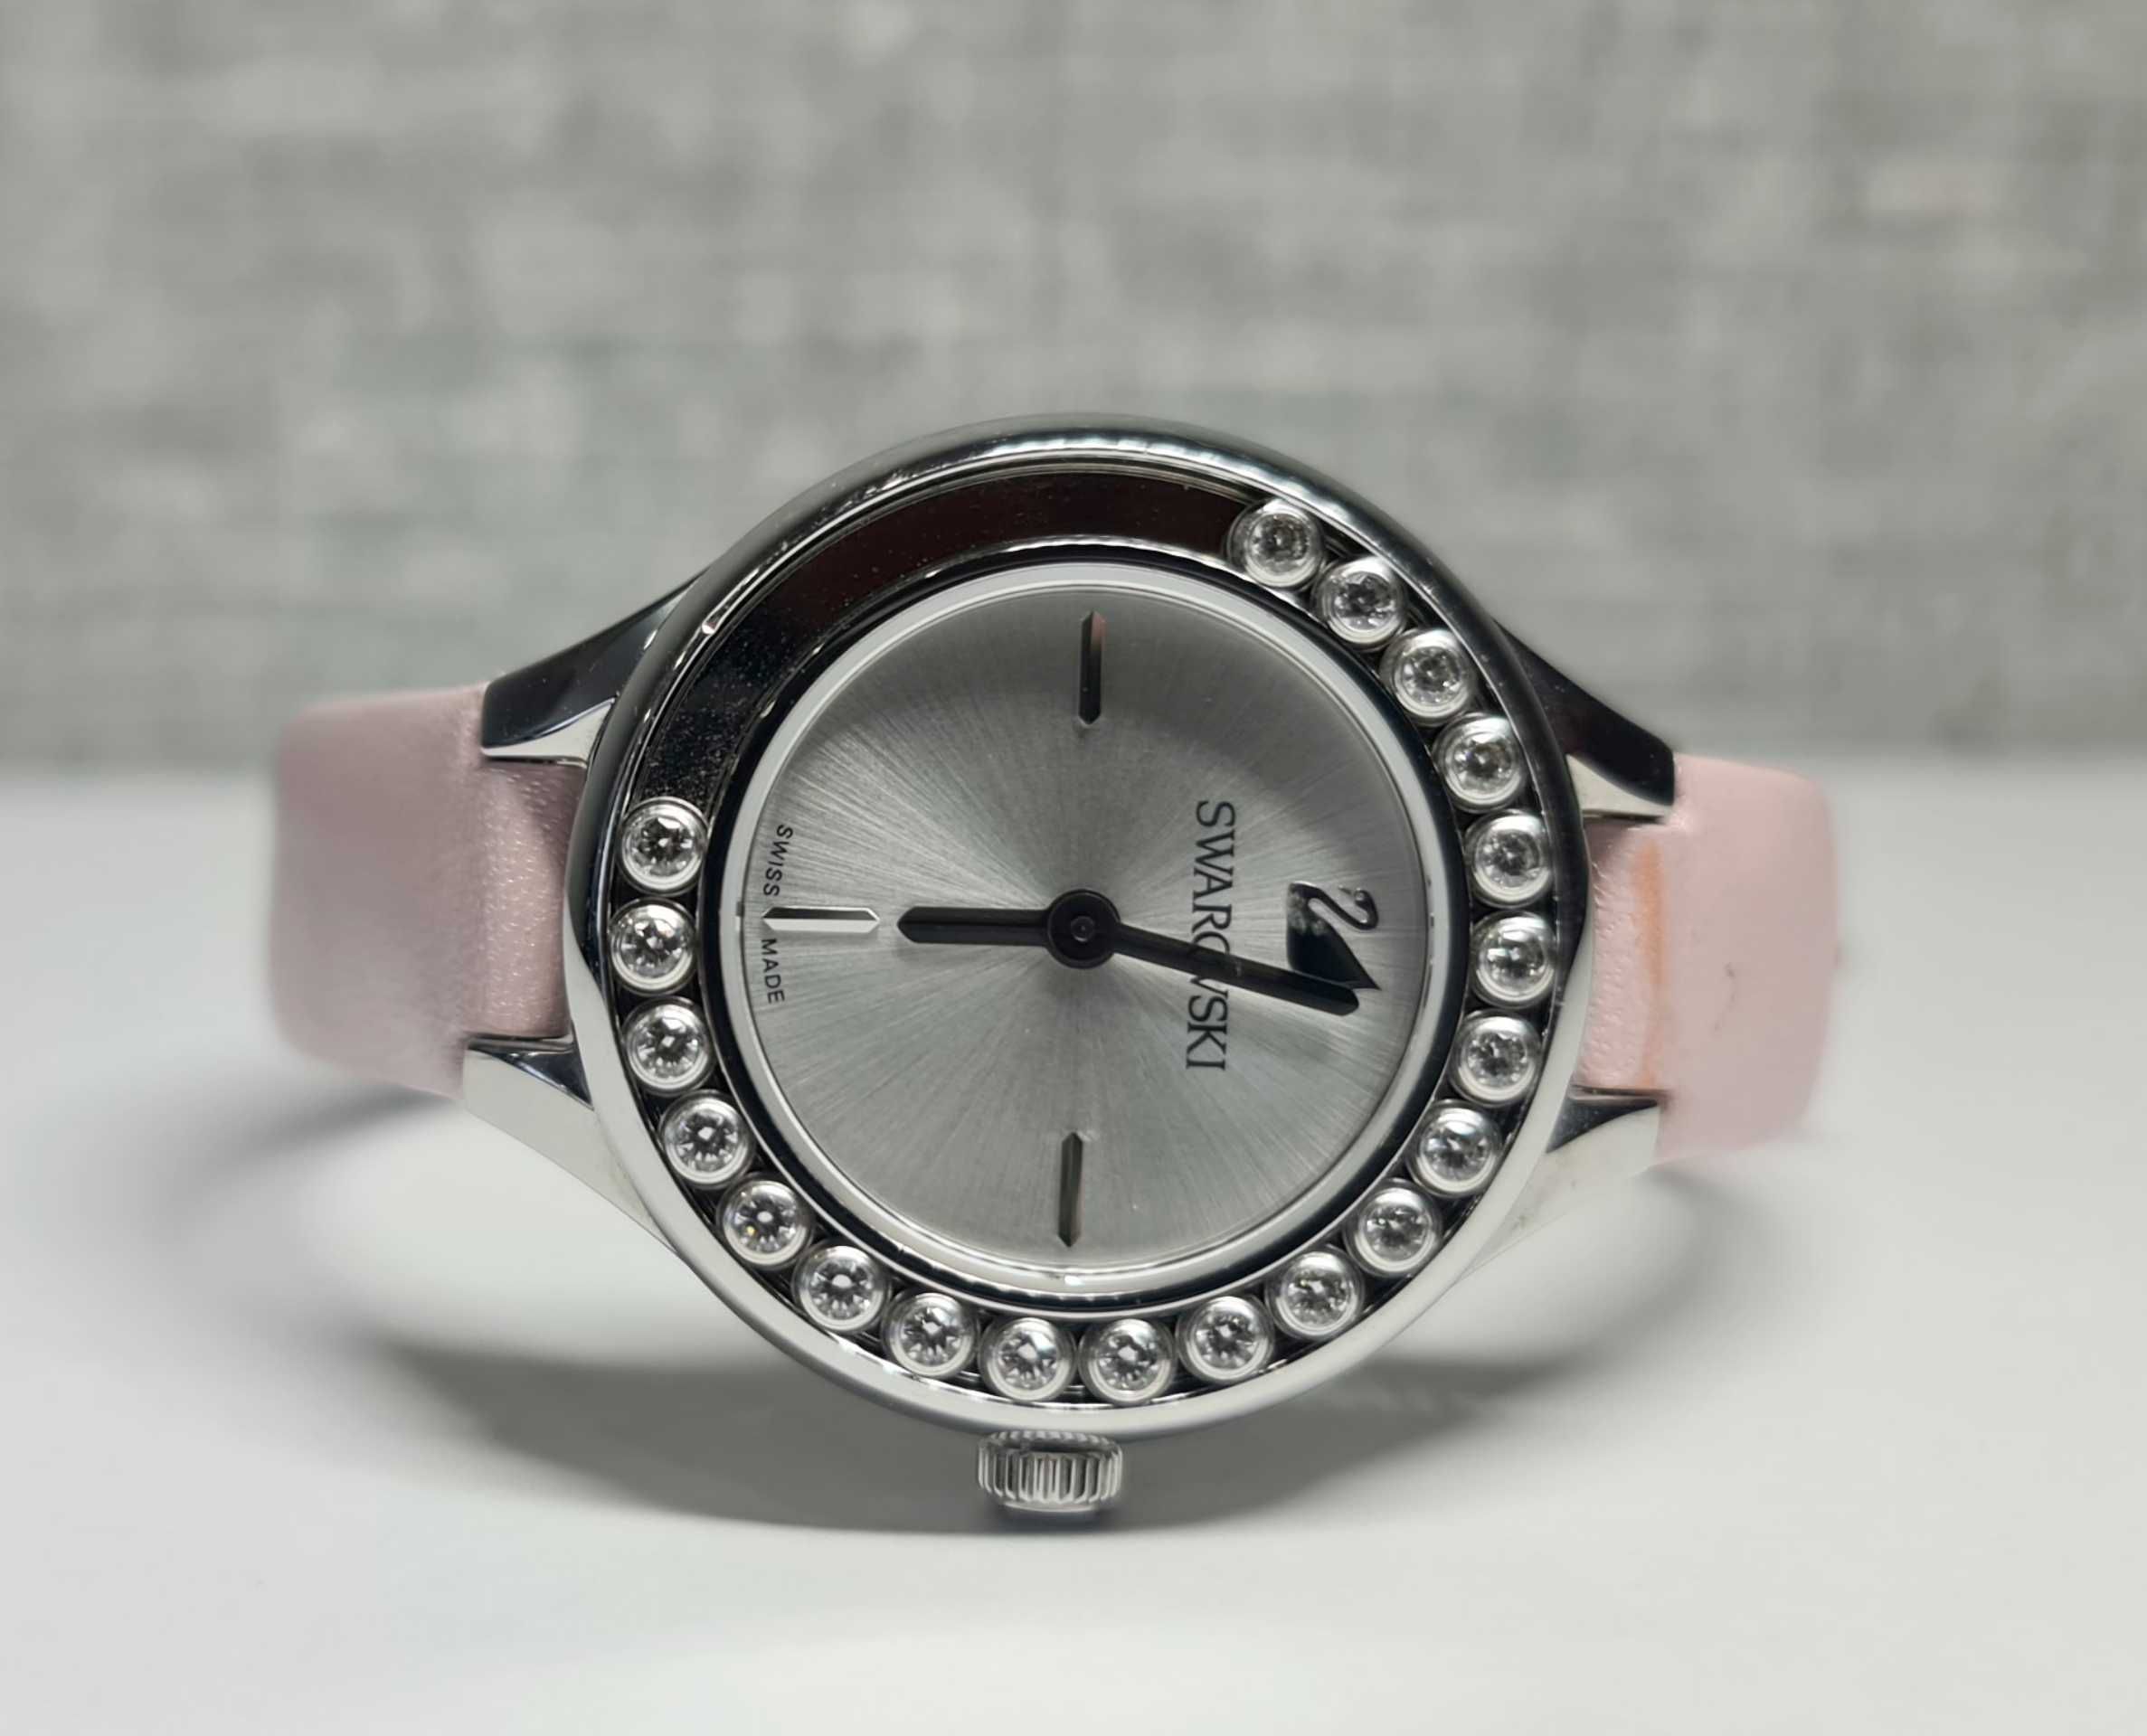 Жіночий годинник Swarovski 5261493 Swiss made